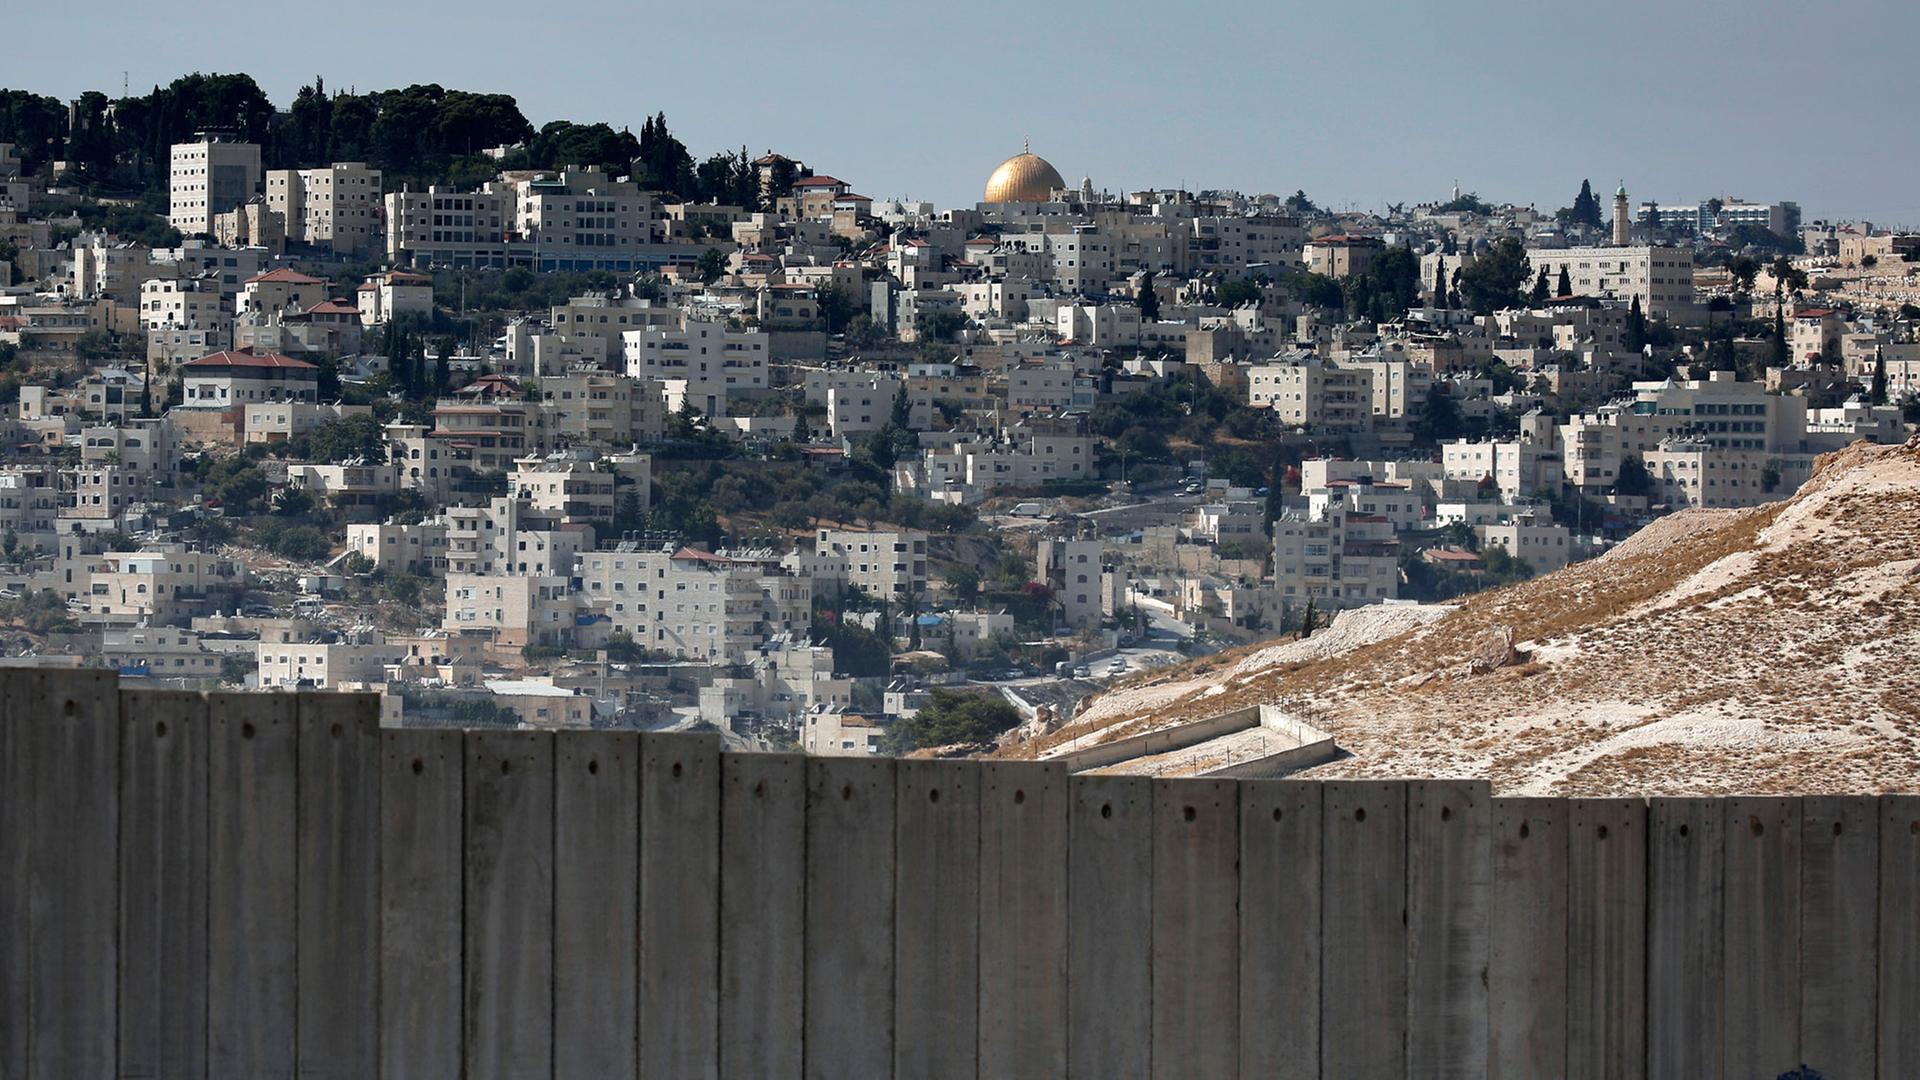 Einer Mauer trennt Jerusalem in einen israelischen und palästinensischen Teil, im Hintergrund der Felsendom mit der goldenen Kuppel.